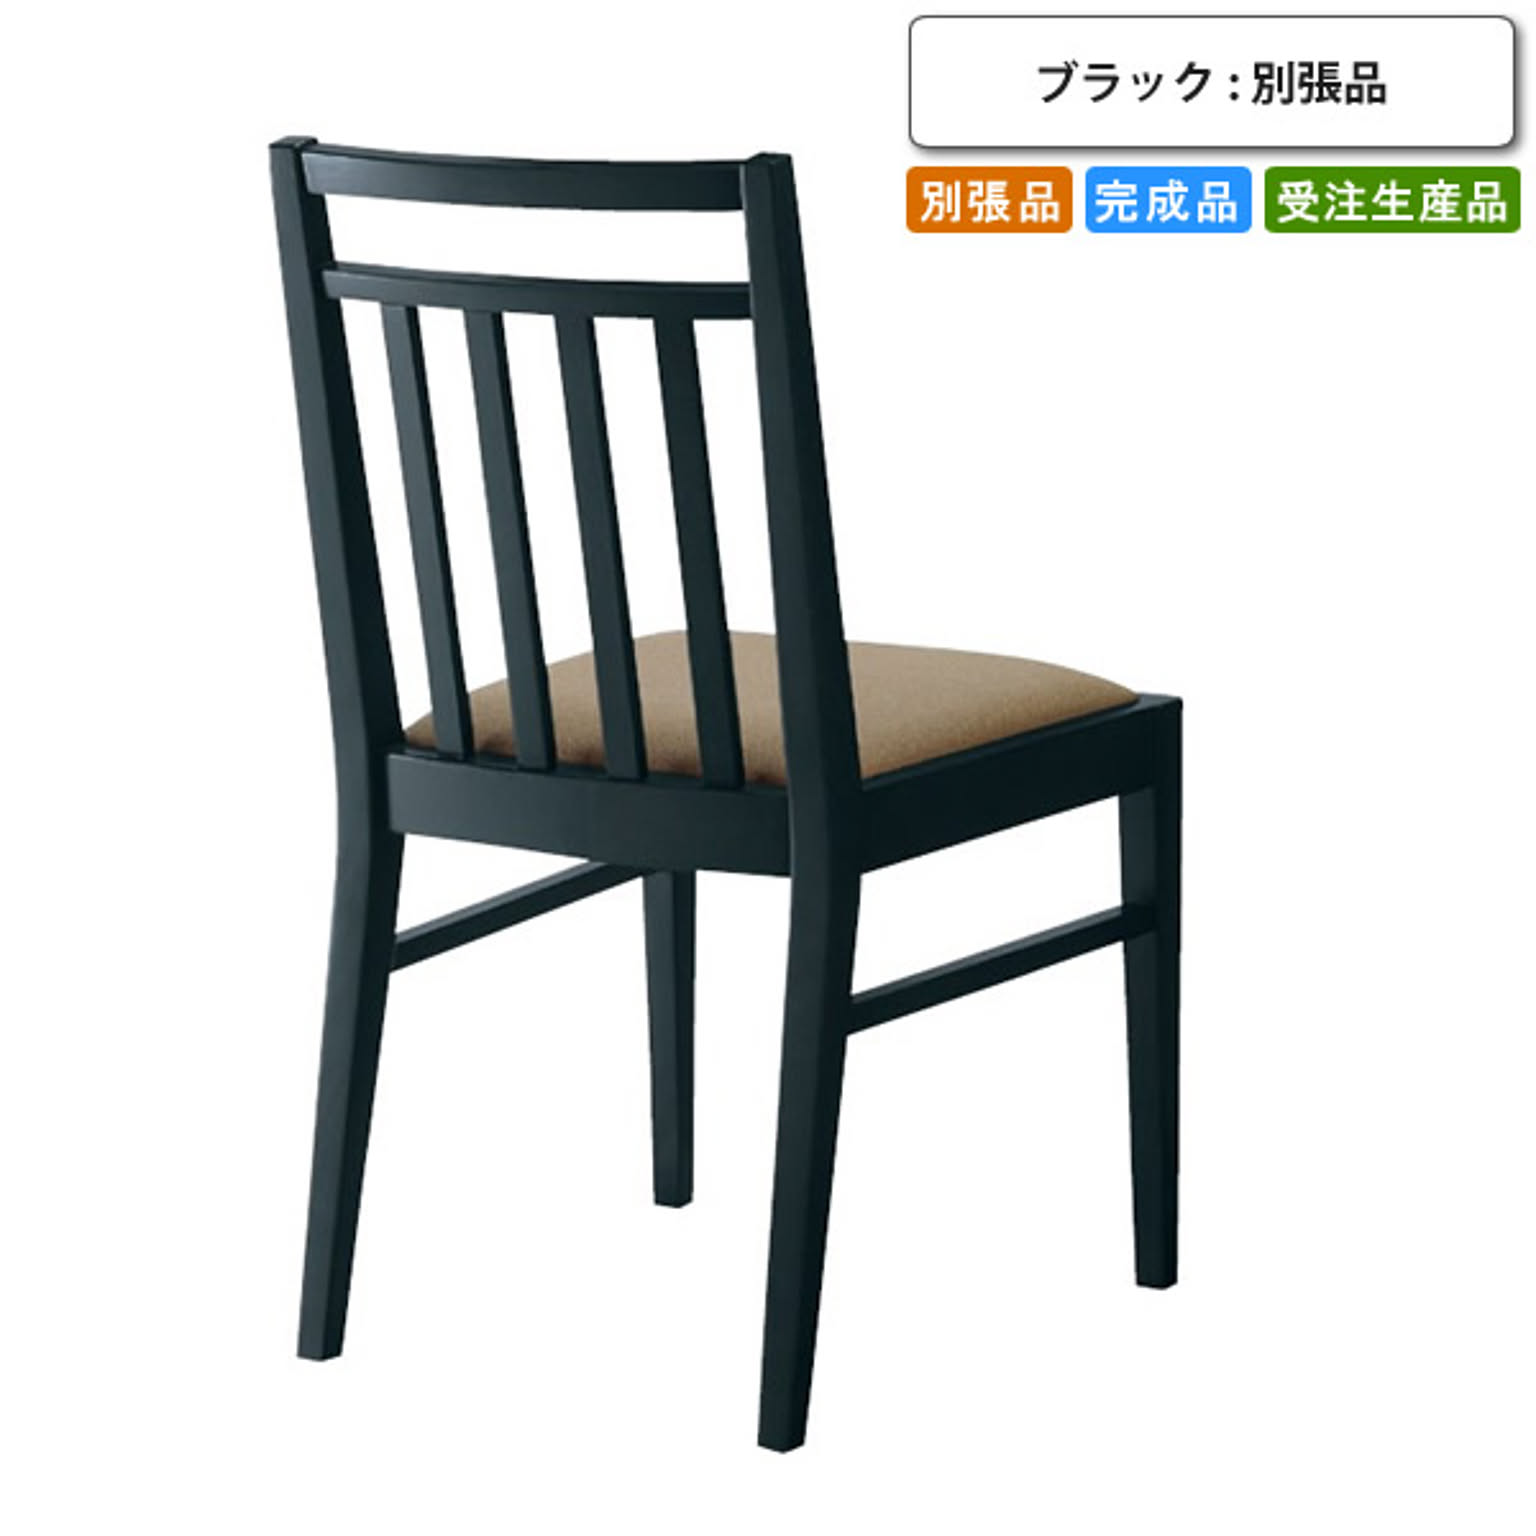 ダイニングチェアー   ブラック 木製 シンプル 椅子 肘掛けなし 別張品 受注生産 ブラック(black) (ナチュラル) 店舗 施設 コントラクト